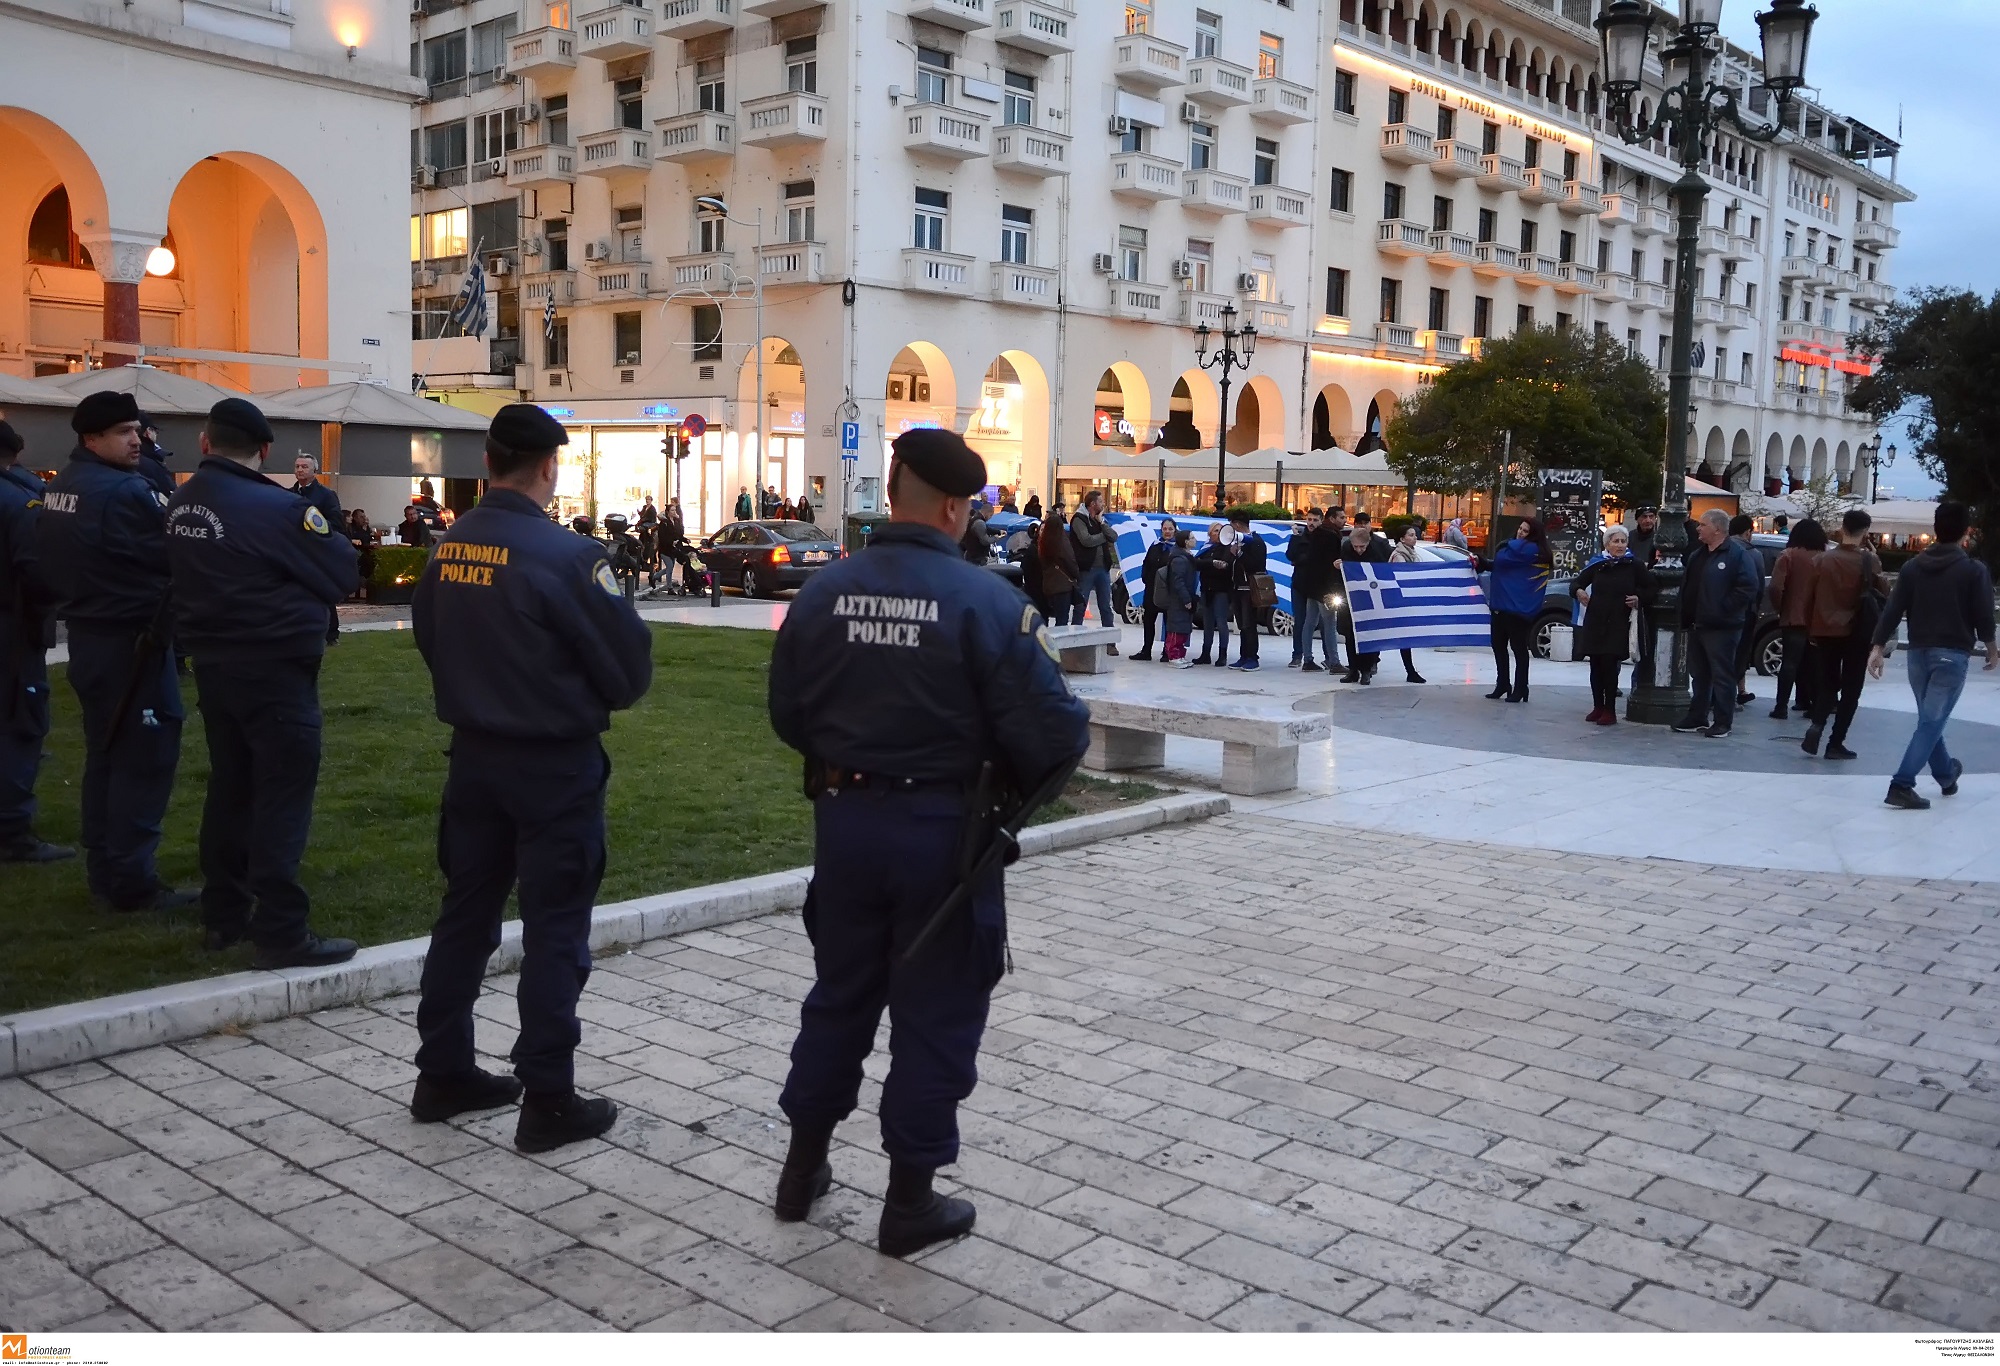 Τσακαλώτος Θεσσαλονίκη: Ο “πορτιέρης” που δεν άφησε γυναίκα να περάσει στην αίθουσα – “Είσαι δεξιά και φασίστρια”